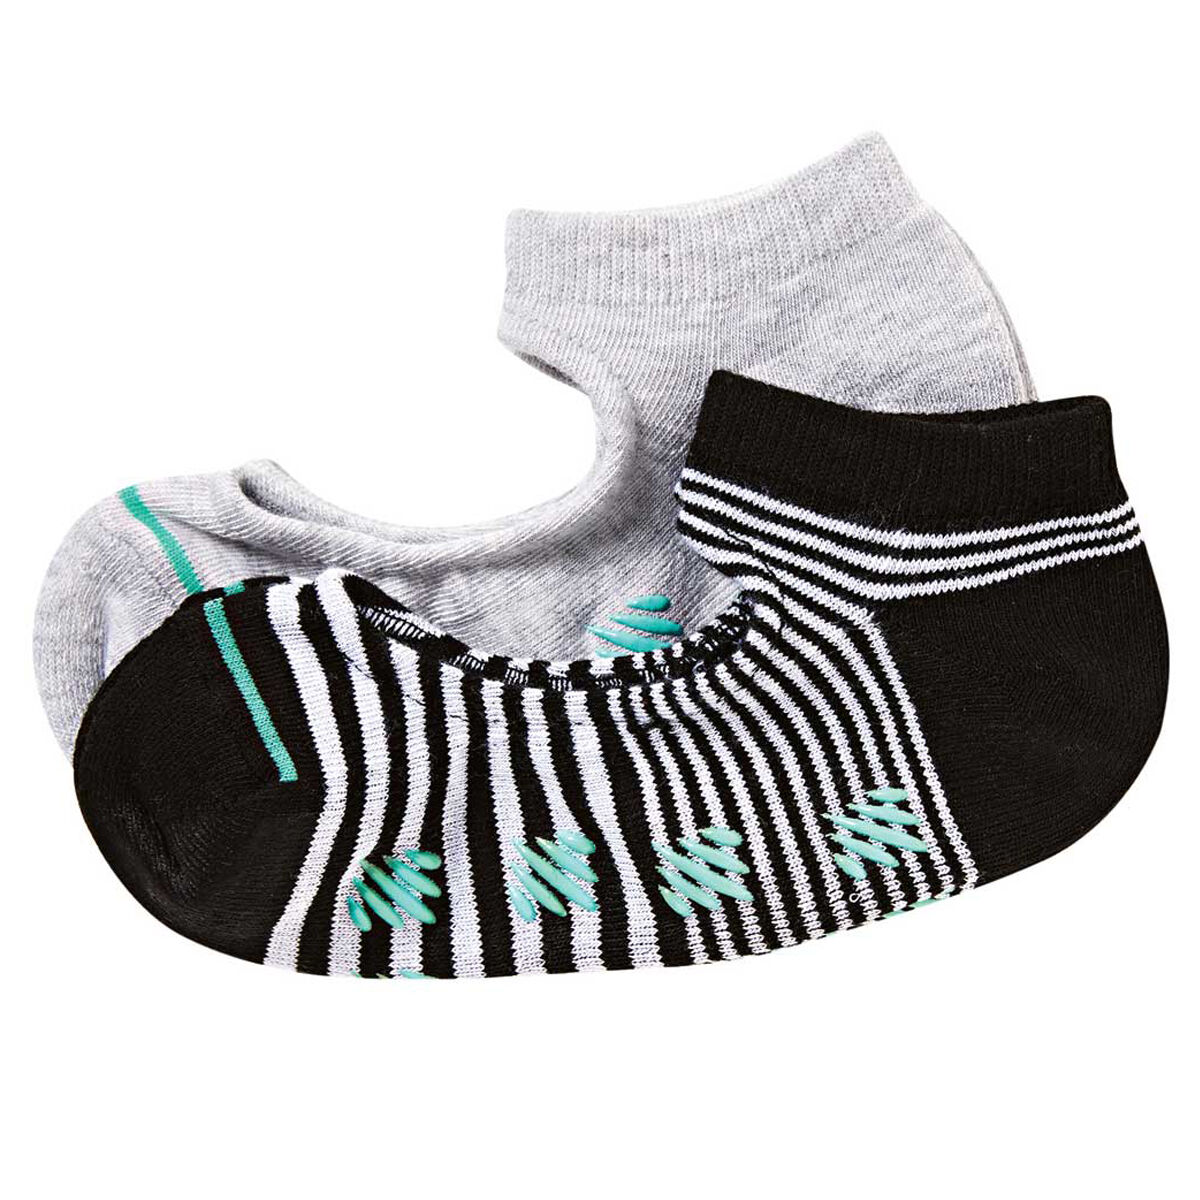 Ell & Voo Pilates Socks 2 Pack | Rebel Sport